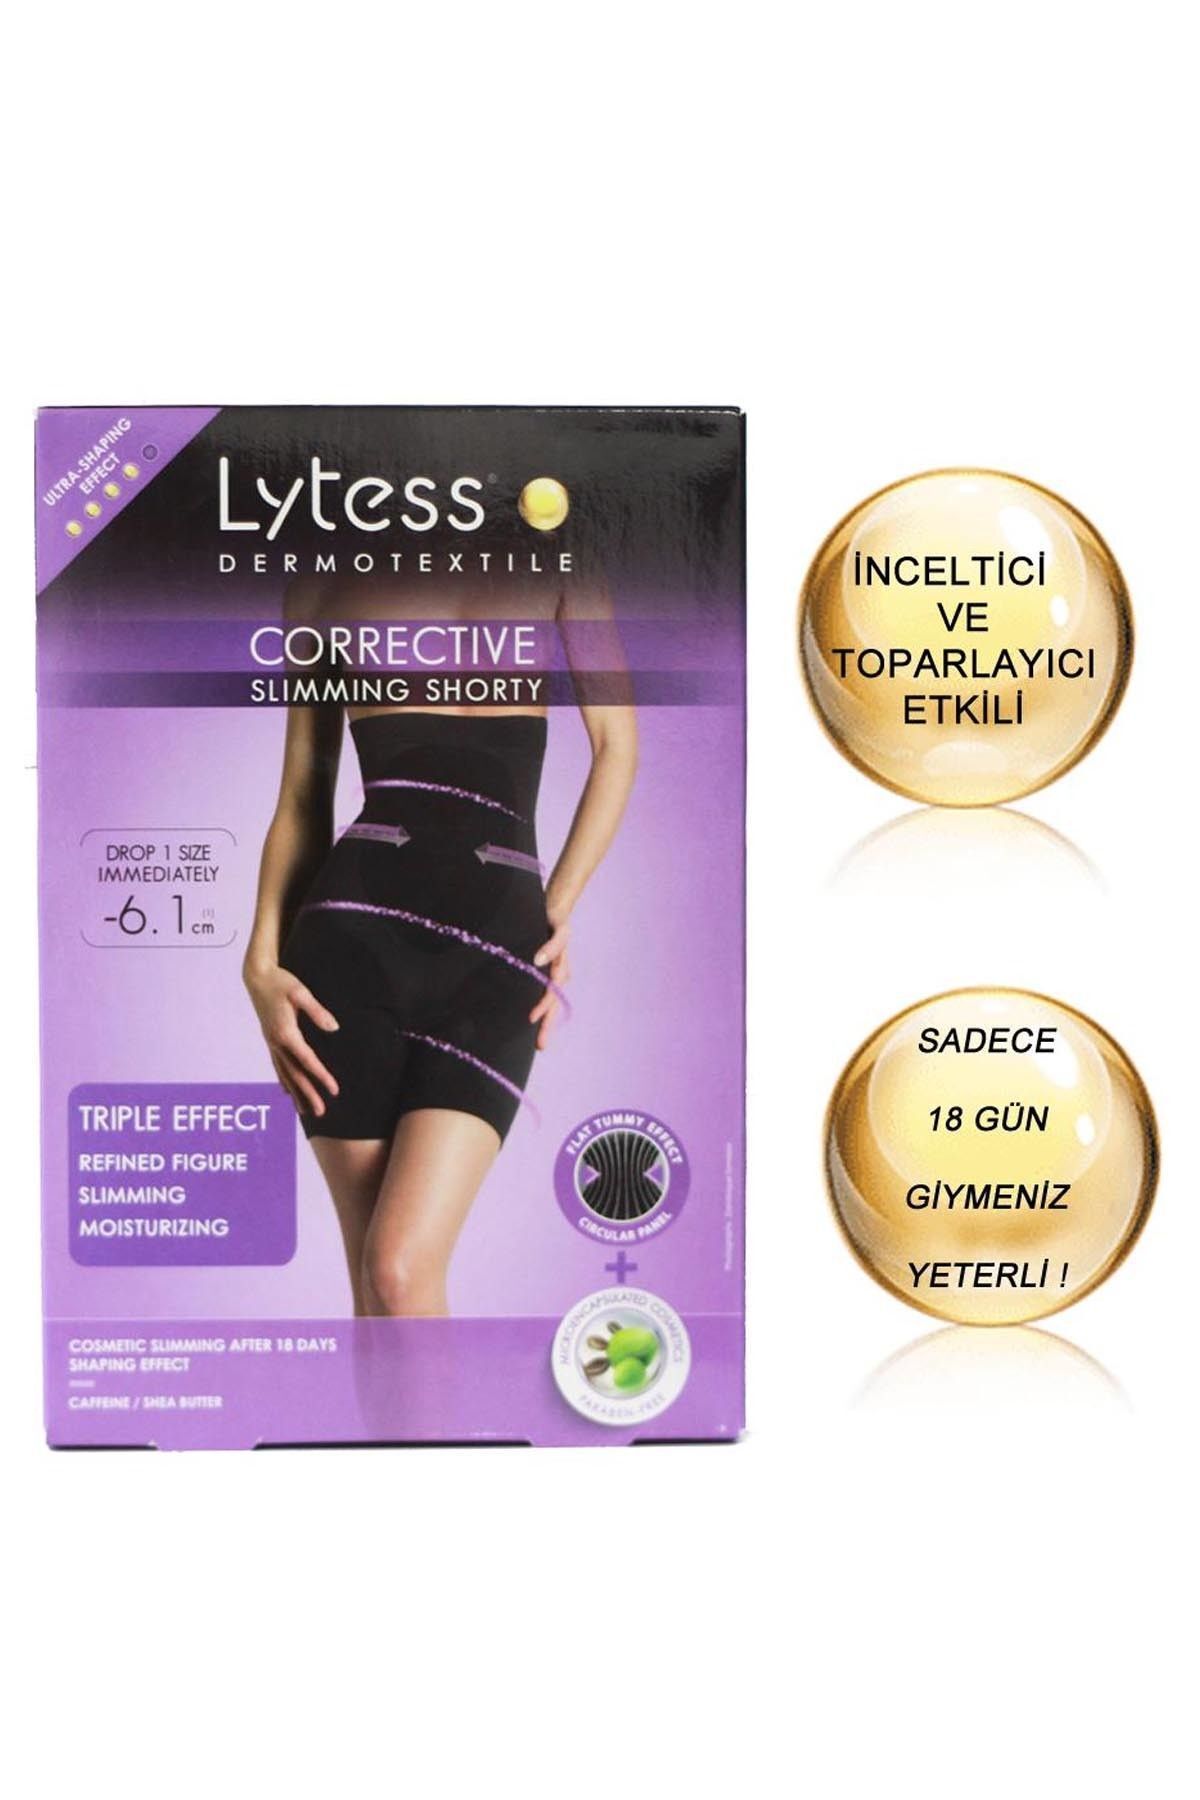 Lytess Corrective Slimming Shorty – Inceltici Ve Sıkılaştırıcı Etkili Karın-bacak Korsesi Nude/chair (Xxl)